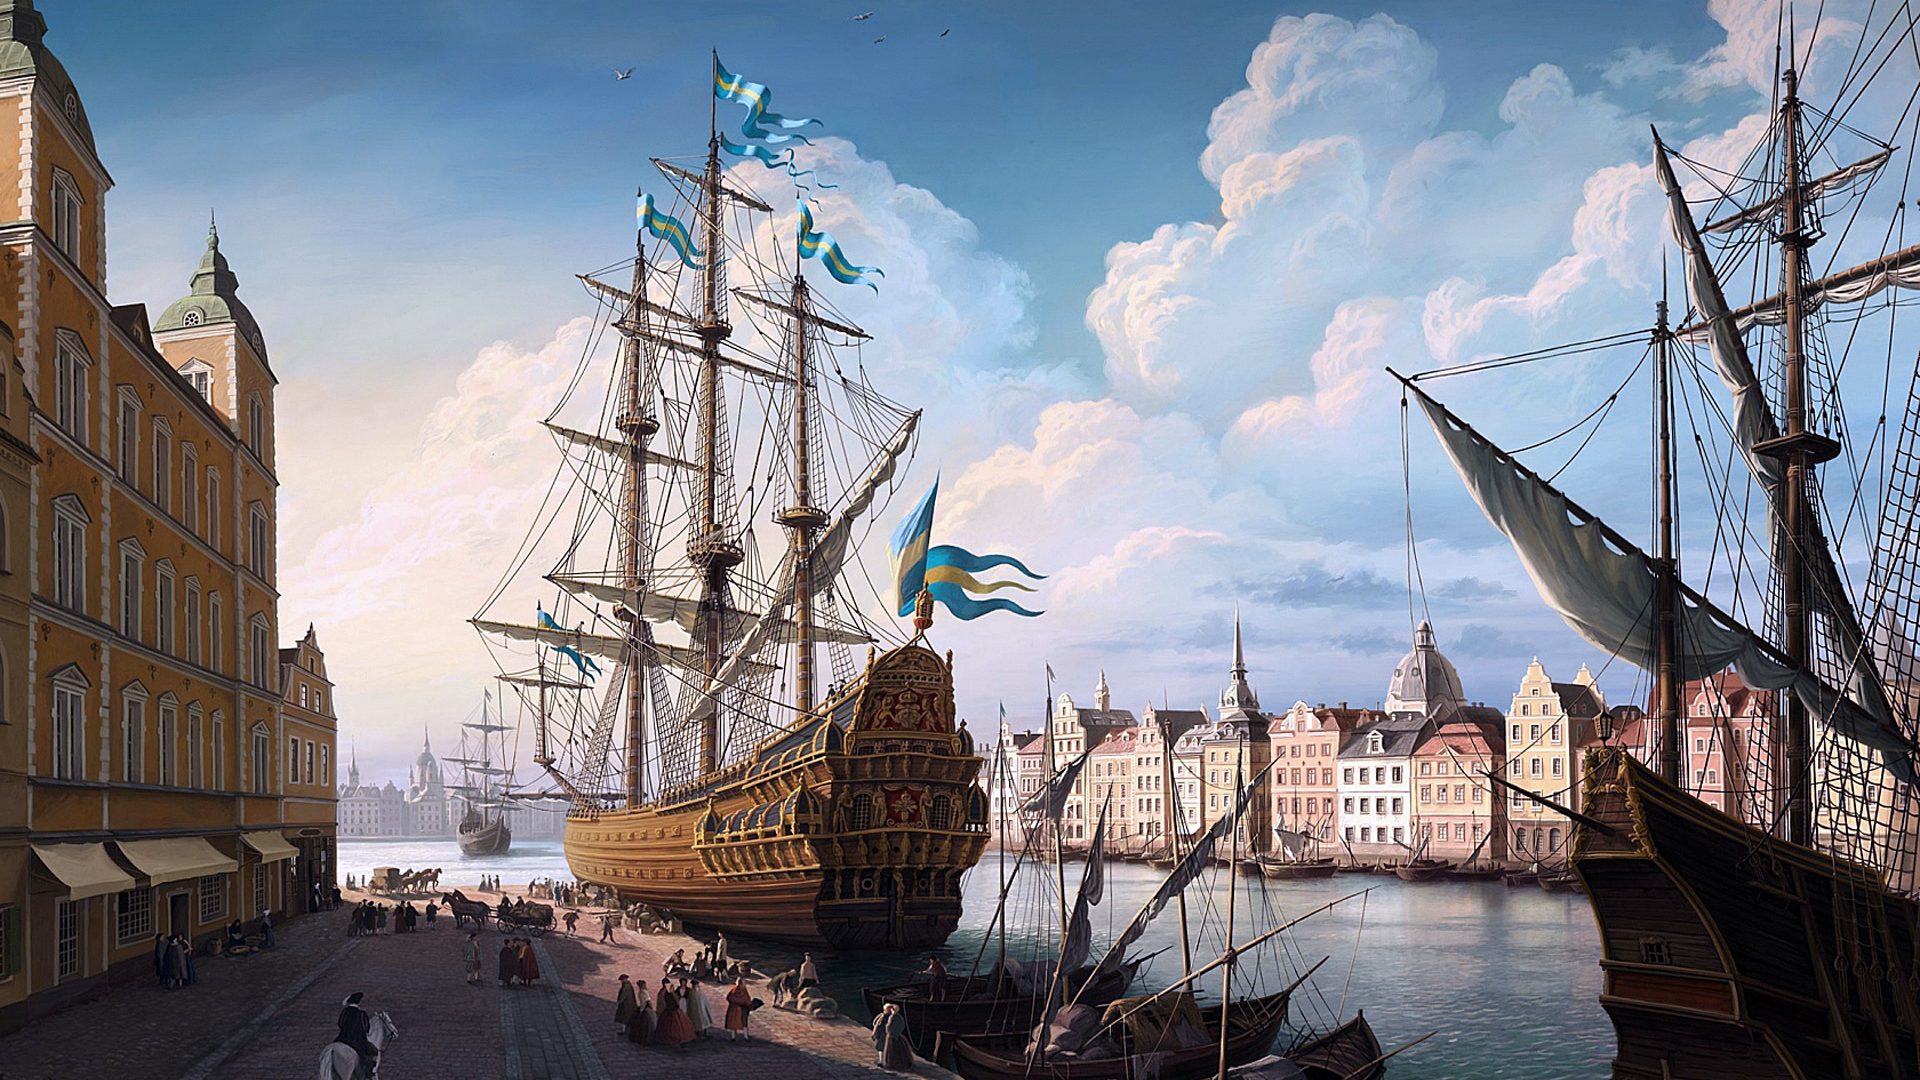 Картина, Швеция, город, порт, корабли, улица, люди, пейзаж.